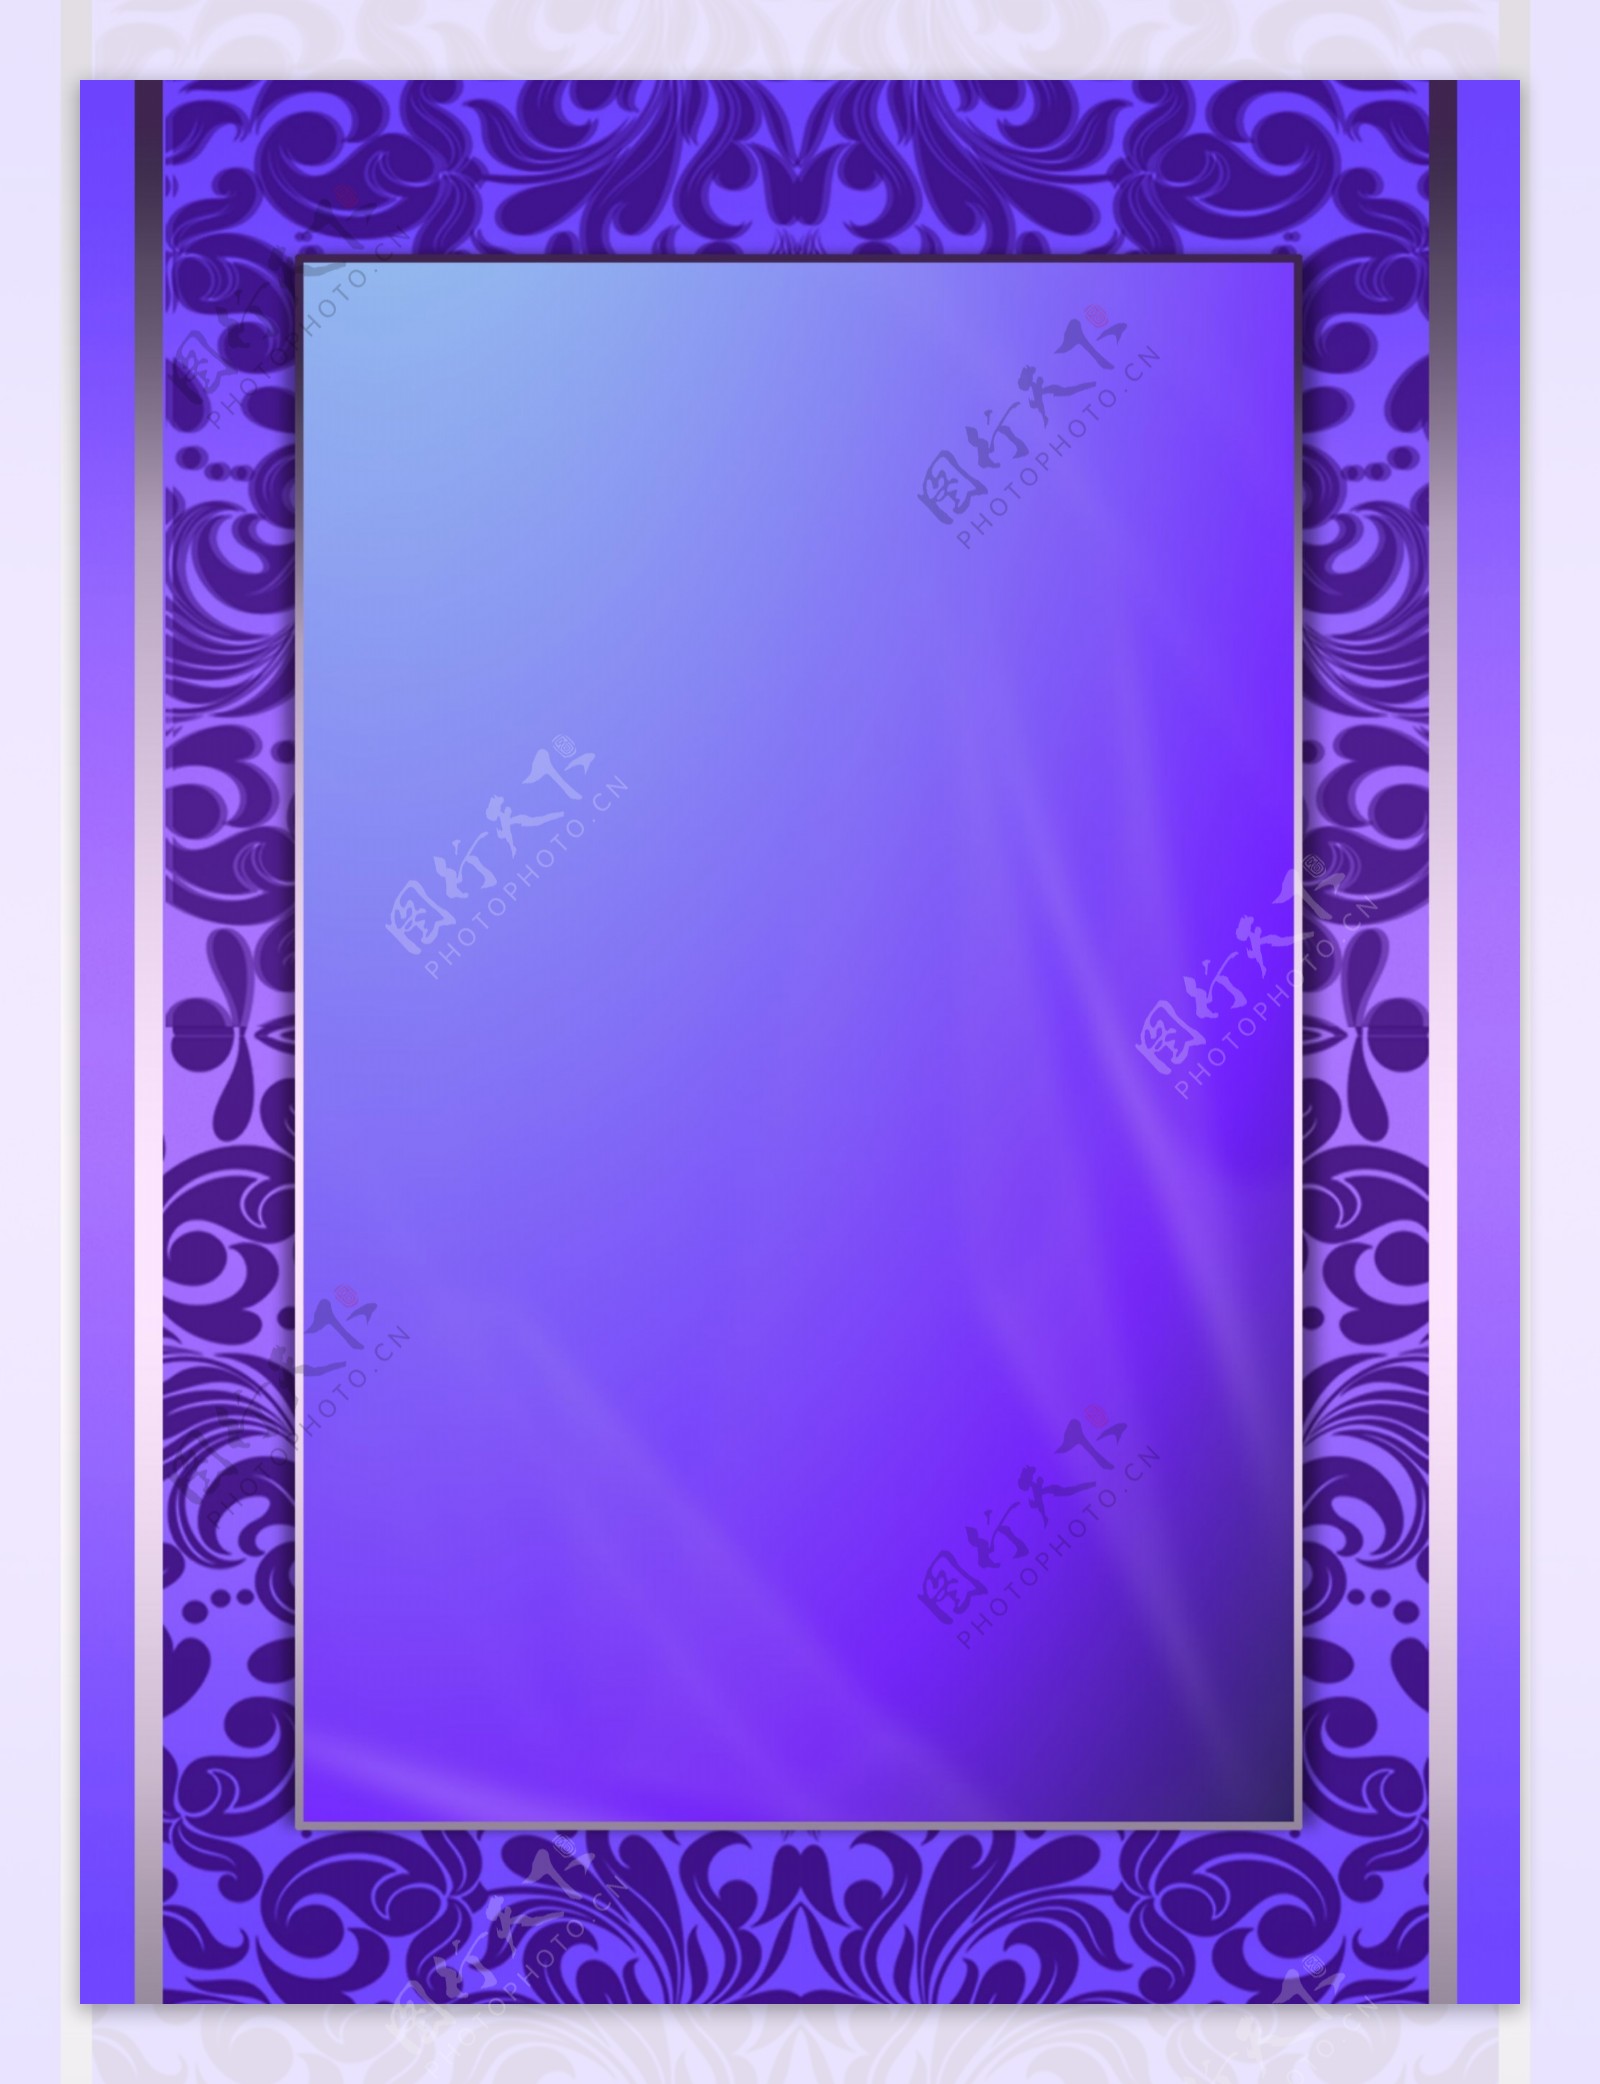 紫色边框背景欧式花纹边框